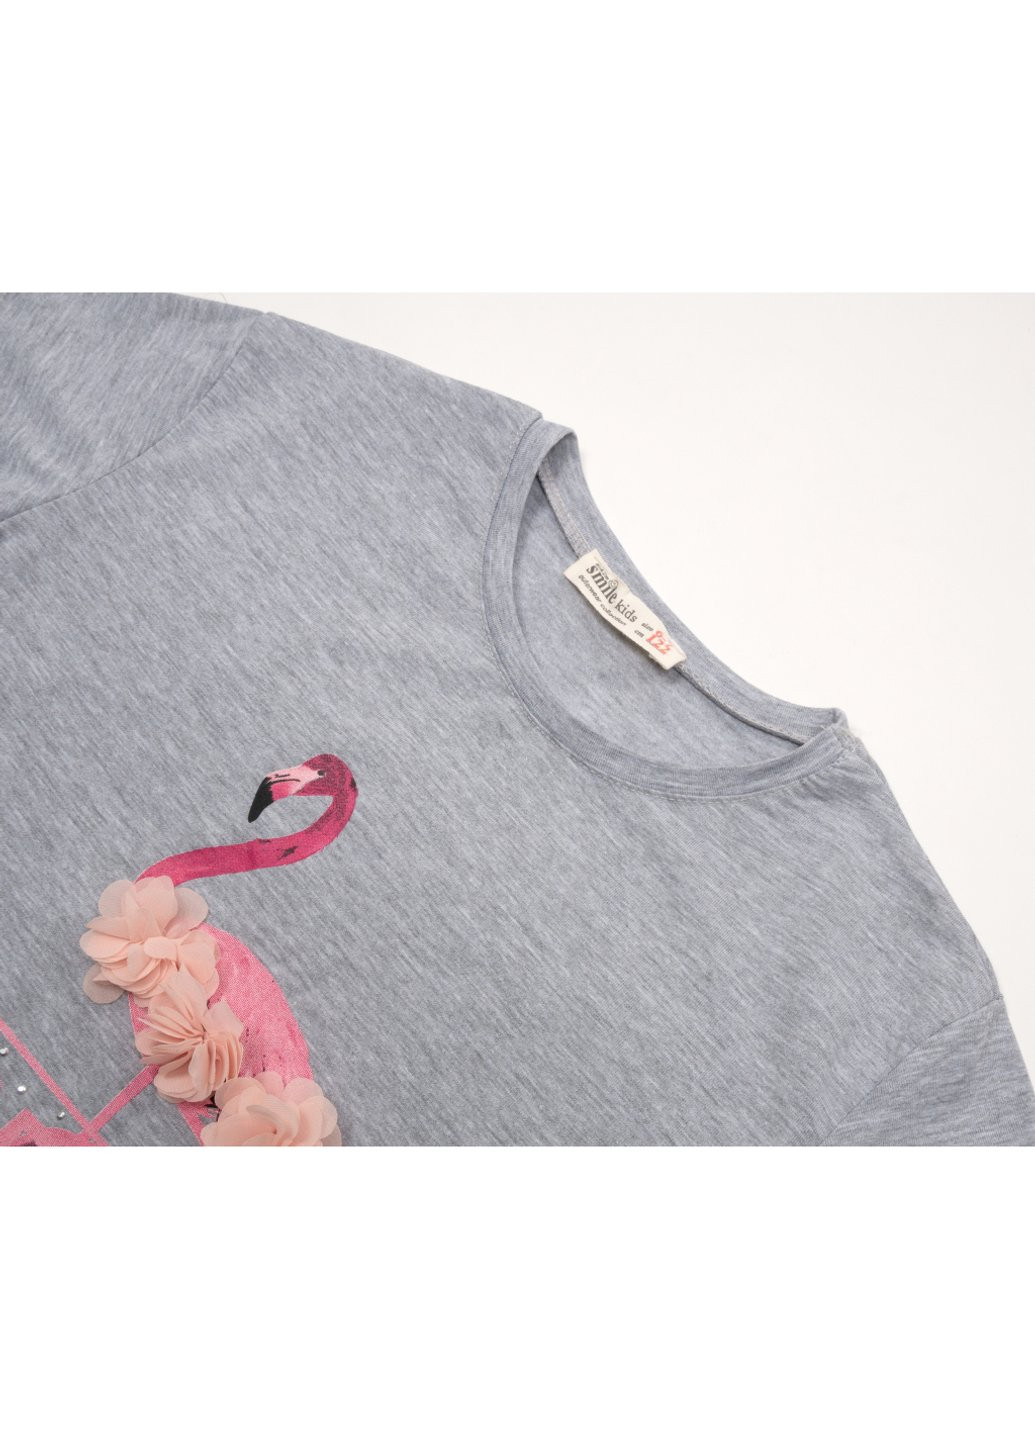 Комбинированная футболка детская с фламинго (3130-122g-gray) Smile